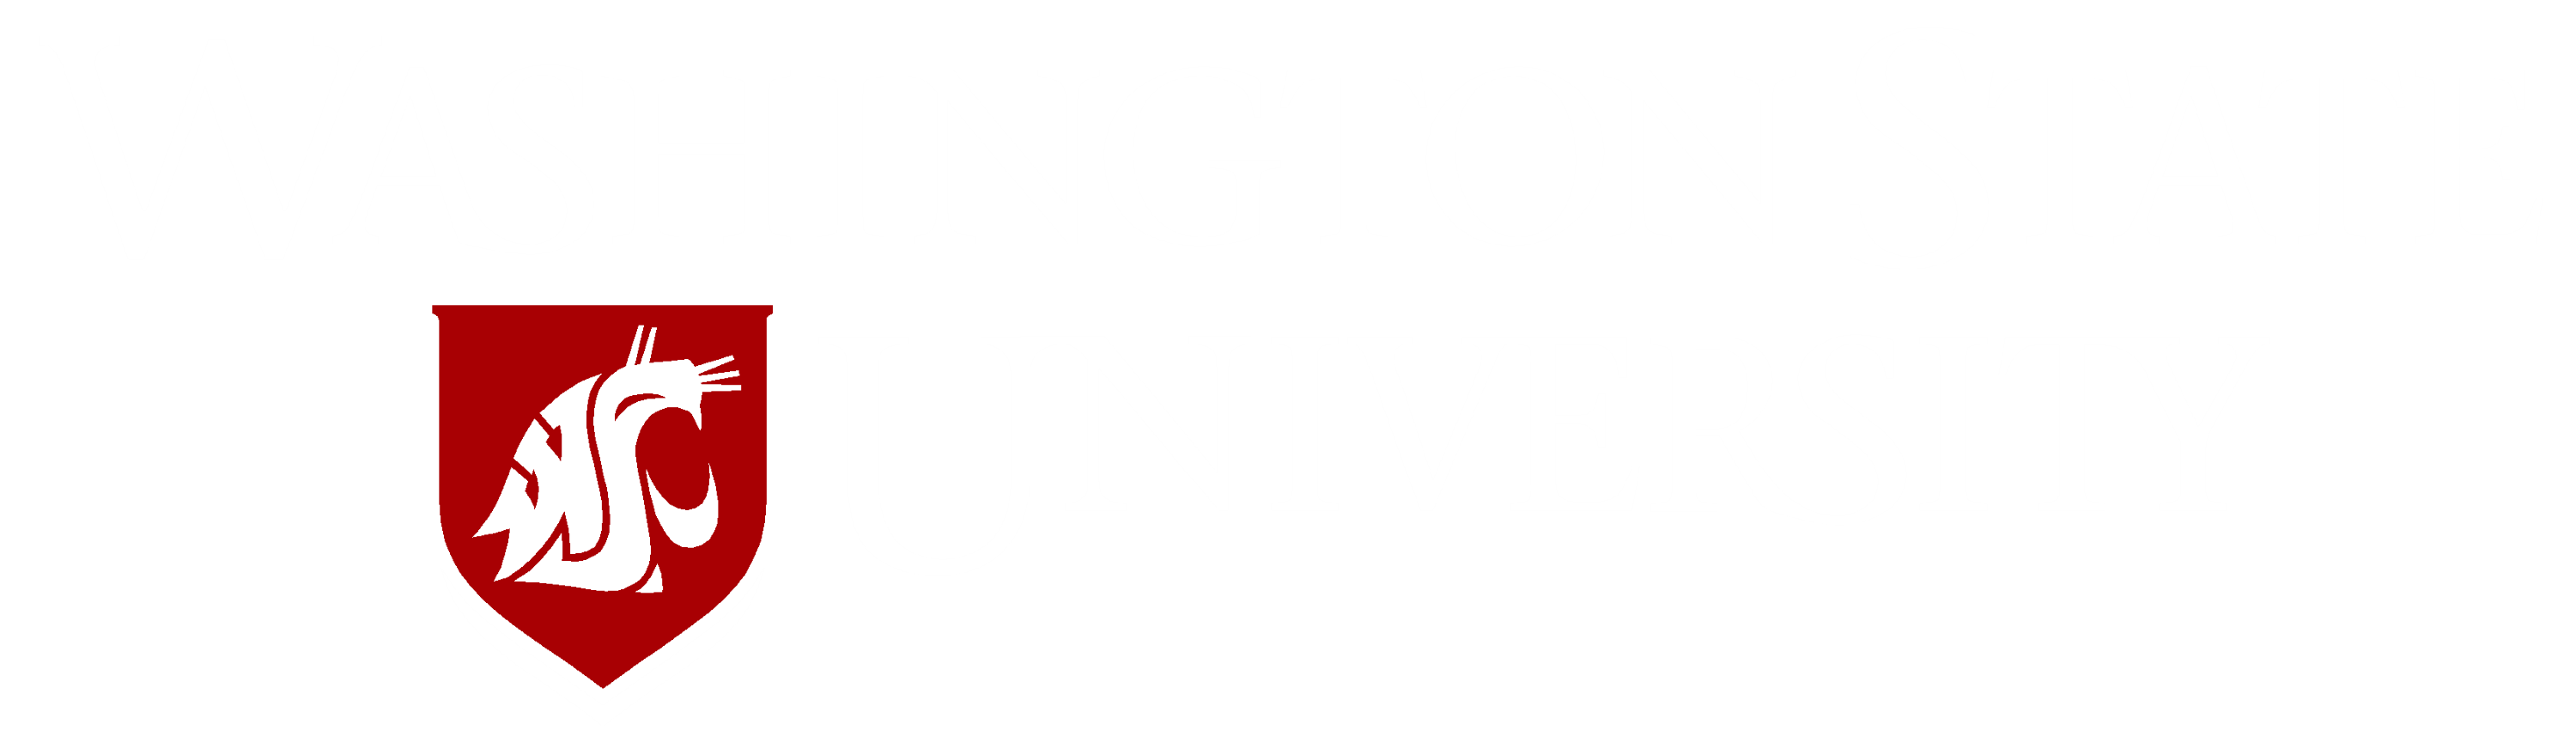 washington_state_university_logo